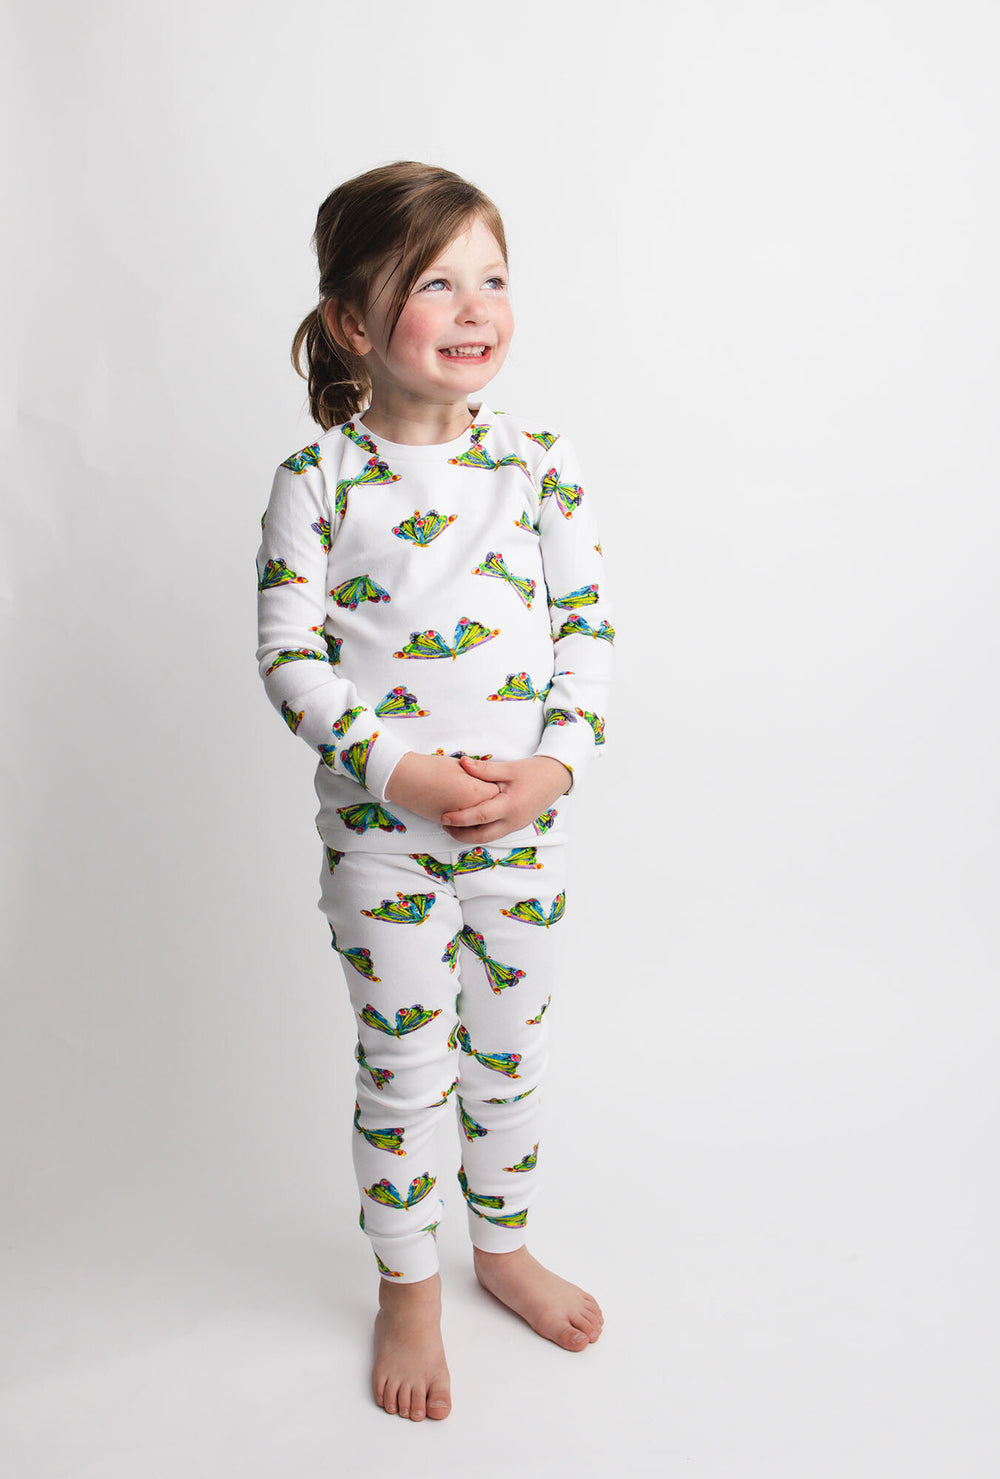 Child wearing Kids' Organic L/Sleeve PJ Set in Butterfly.